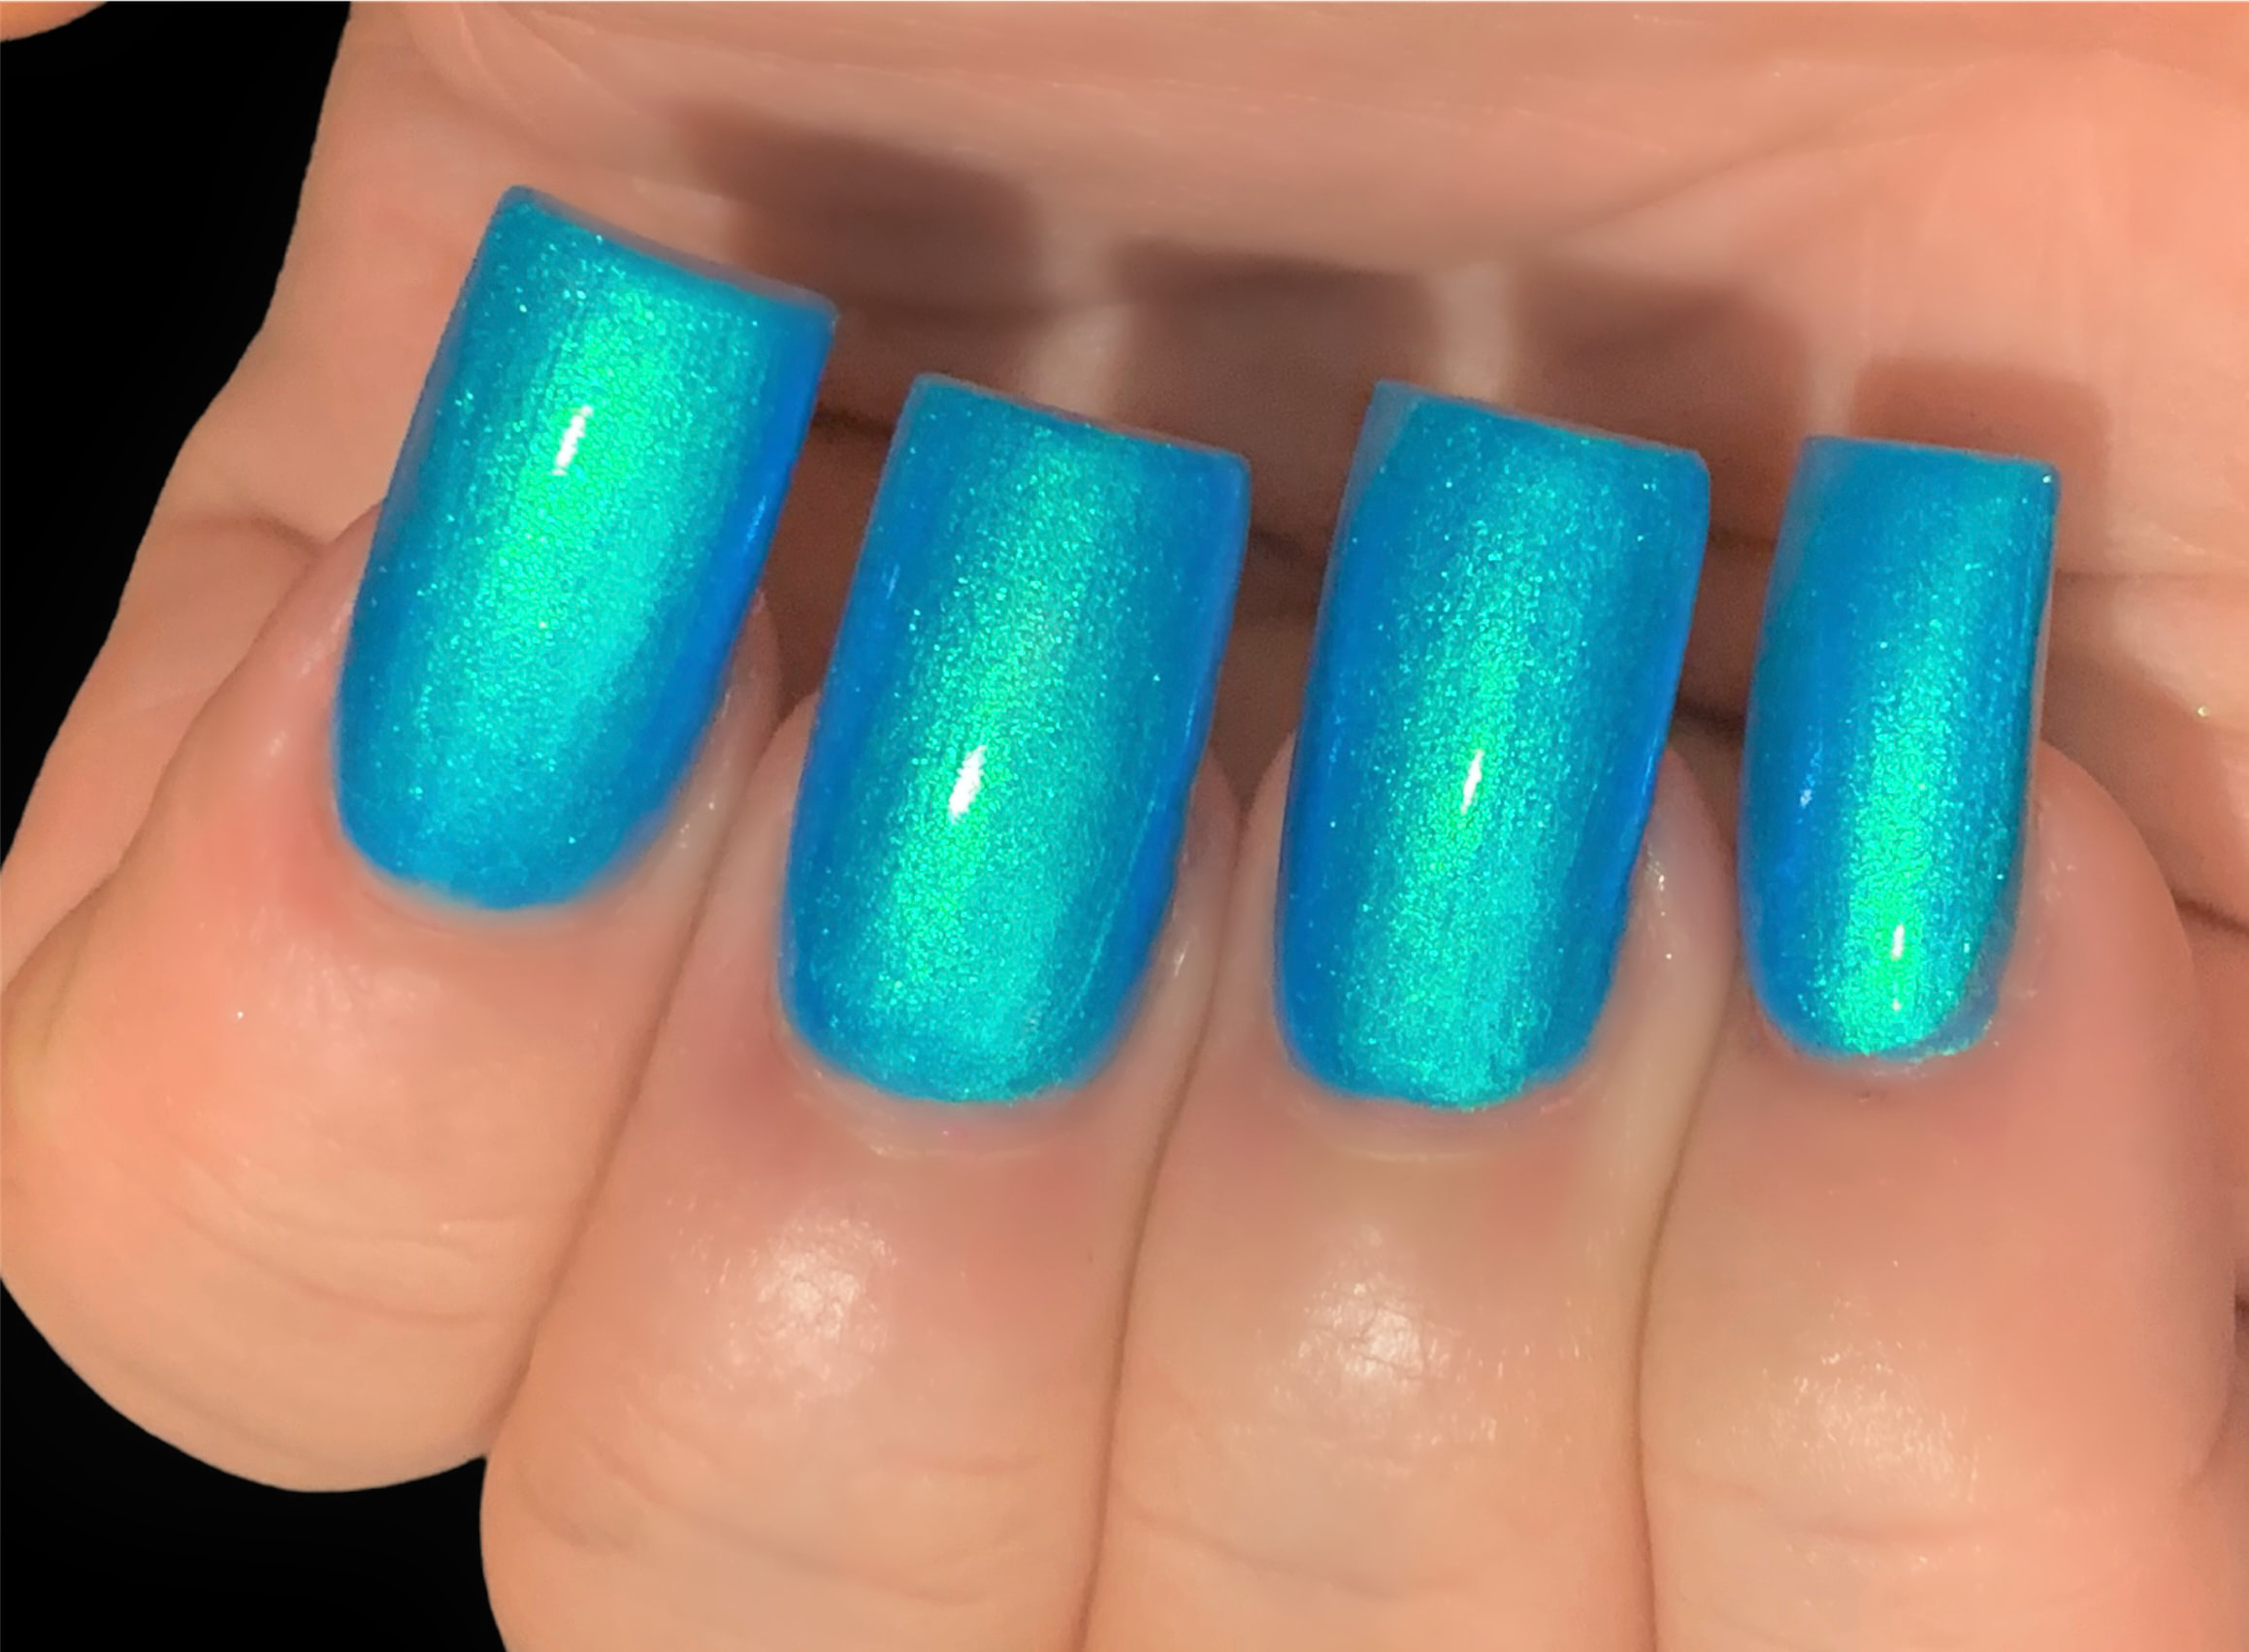 Aqua nails with glitter and nail art : r/Nails